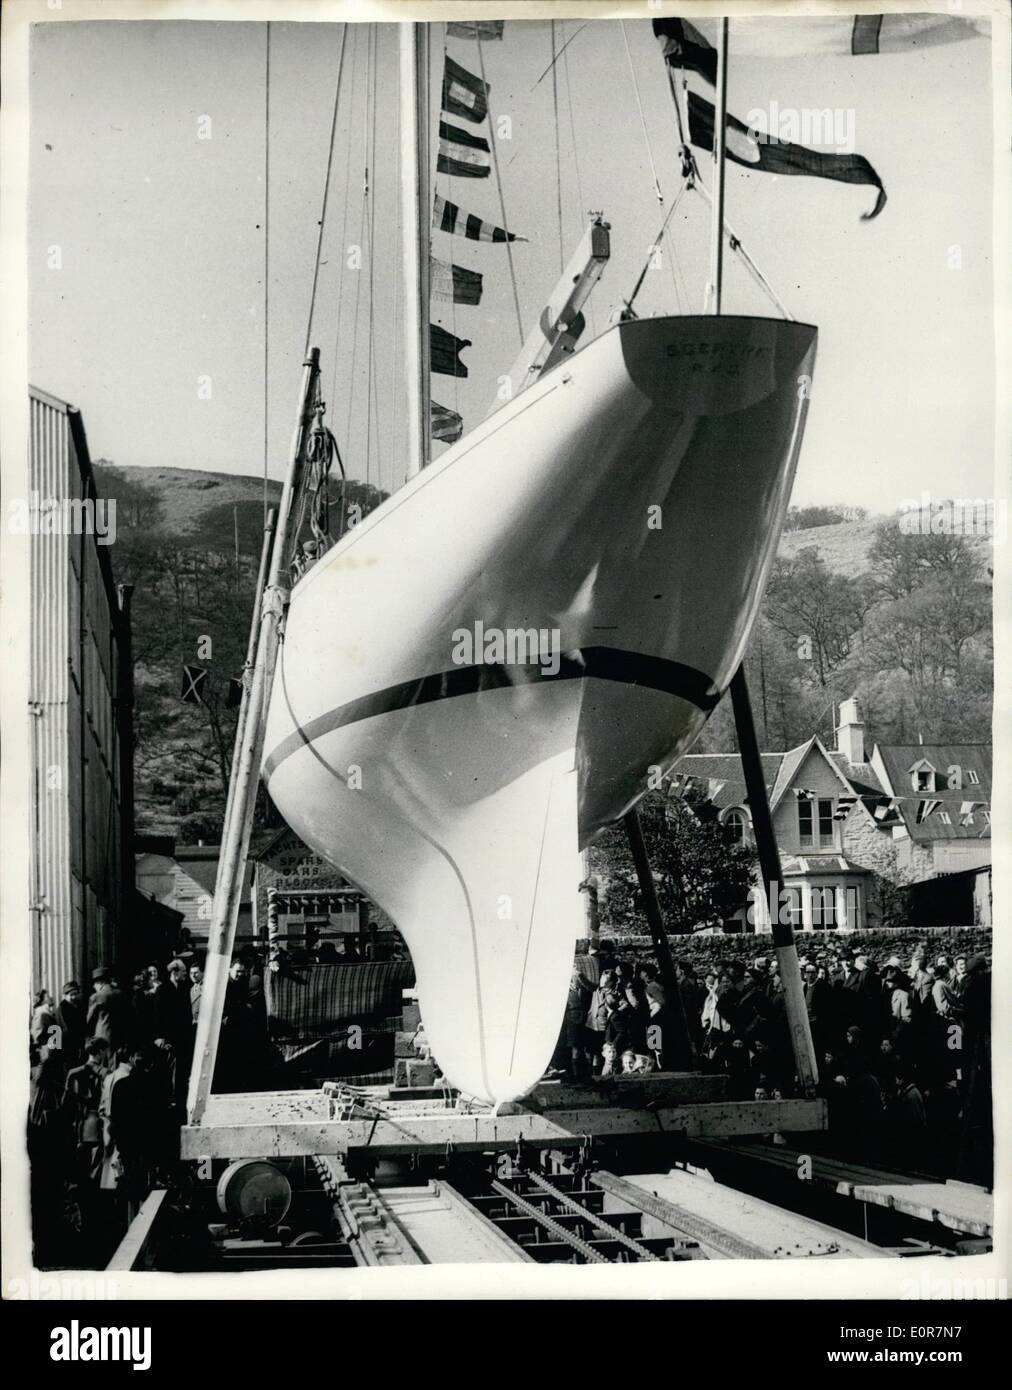 Mai 05, 1958 - Lancement de la Challenger de l'America's cup. : le yacht, le Sceptre, le challenger de l'America's Cup au large de Rhode Island, en septembre prochain, a été lancé dans la Sandpoint à banc, Argyil, Ecosse, hier par Lady Gore, l'épouse de Sir Ralph Gore, commodore du Royal Yacht Squadron. Photo show le yacht de Sceptre se trouve dans la cale avant le lancement d'hier. Banque D'Images